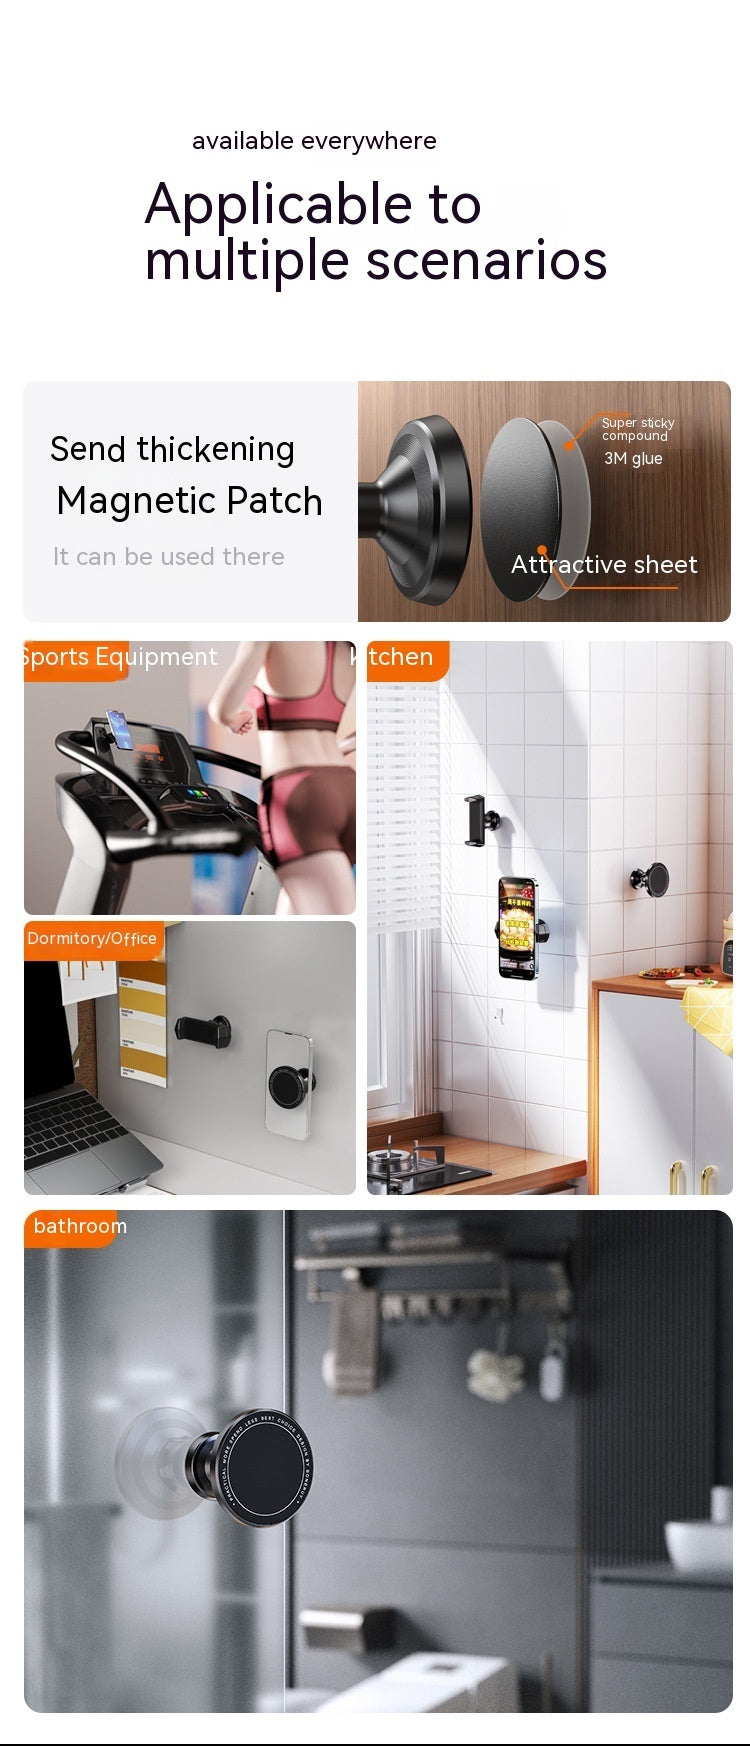 BRACKET Gym Konyhai fürdőszoba mágneses szívószeszer 360 fokos hordozható telefontartót képes forgatni